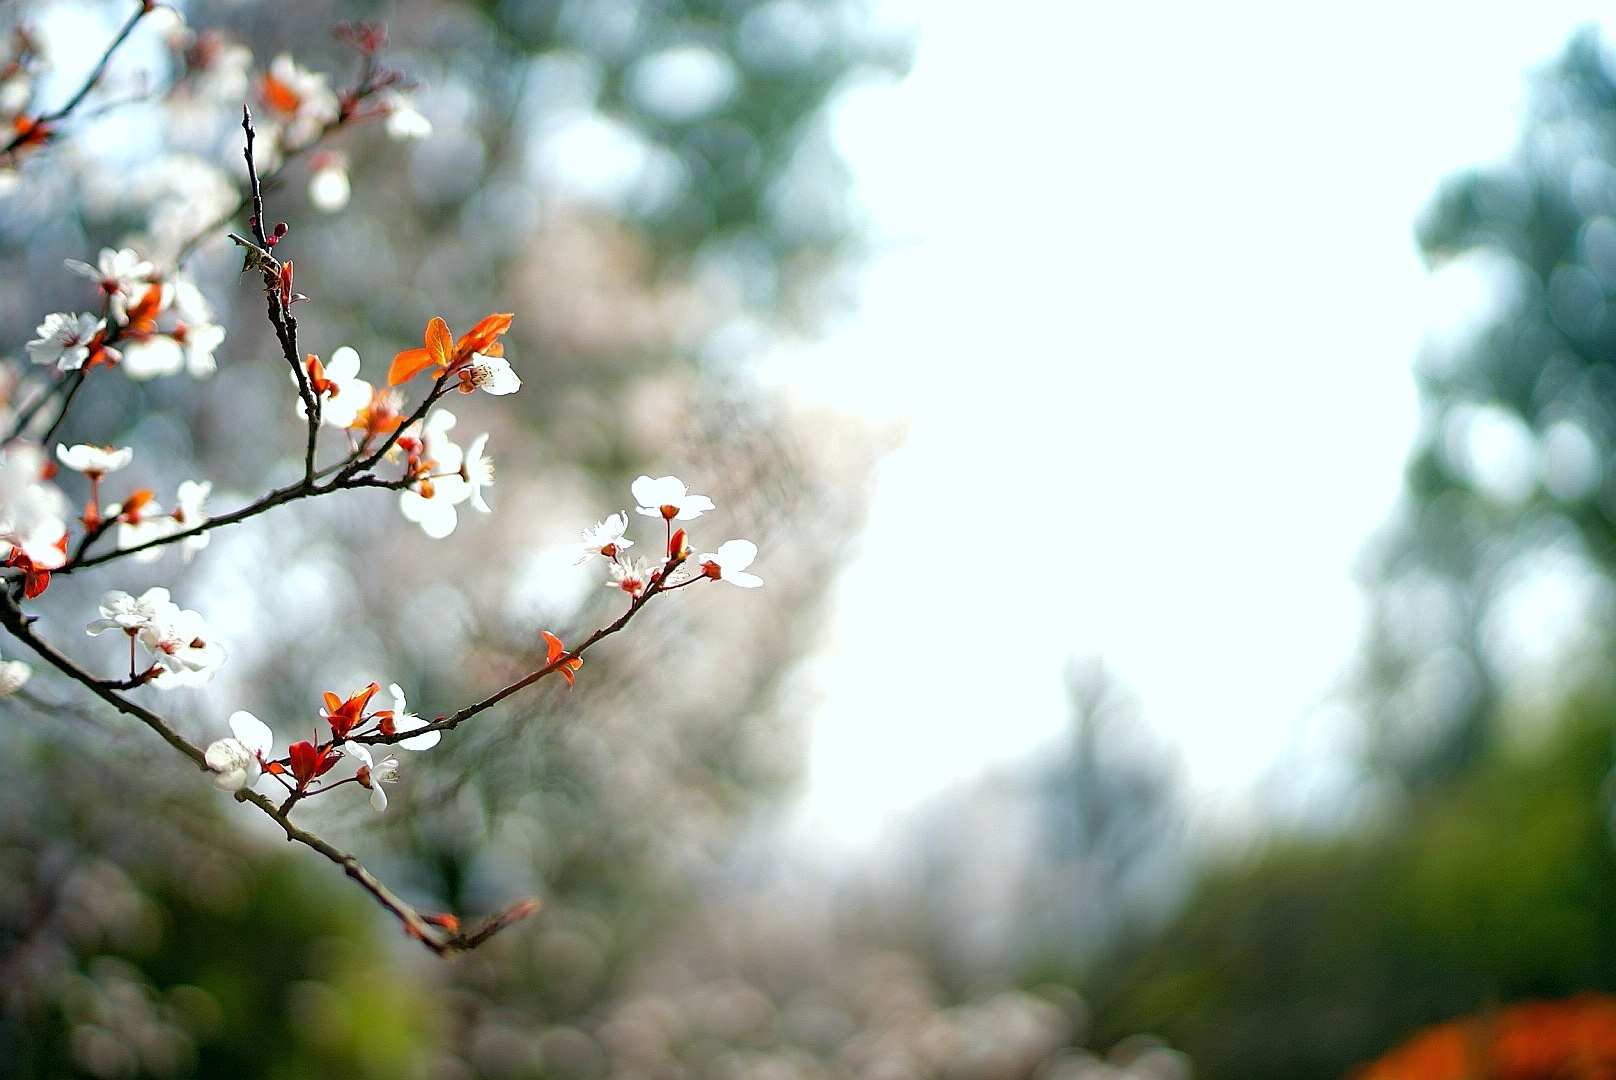 21年3月14为止无锡金匮公园的樱花还没开放